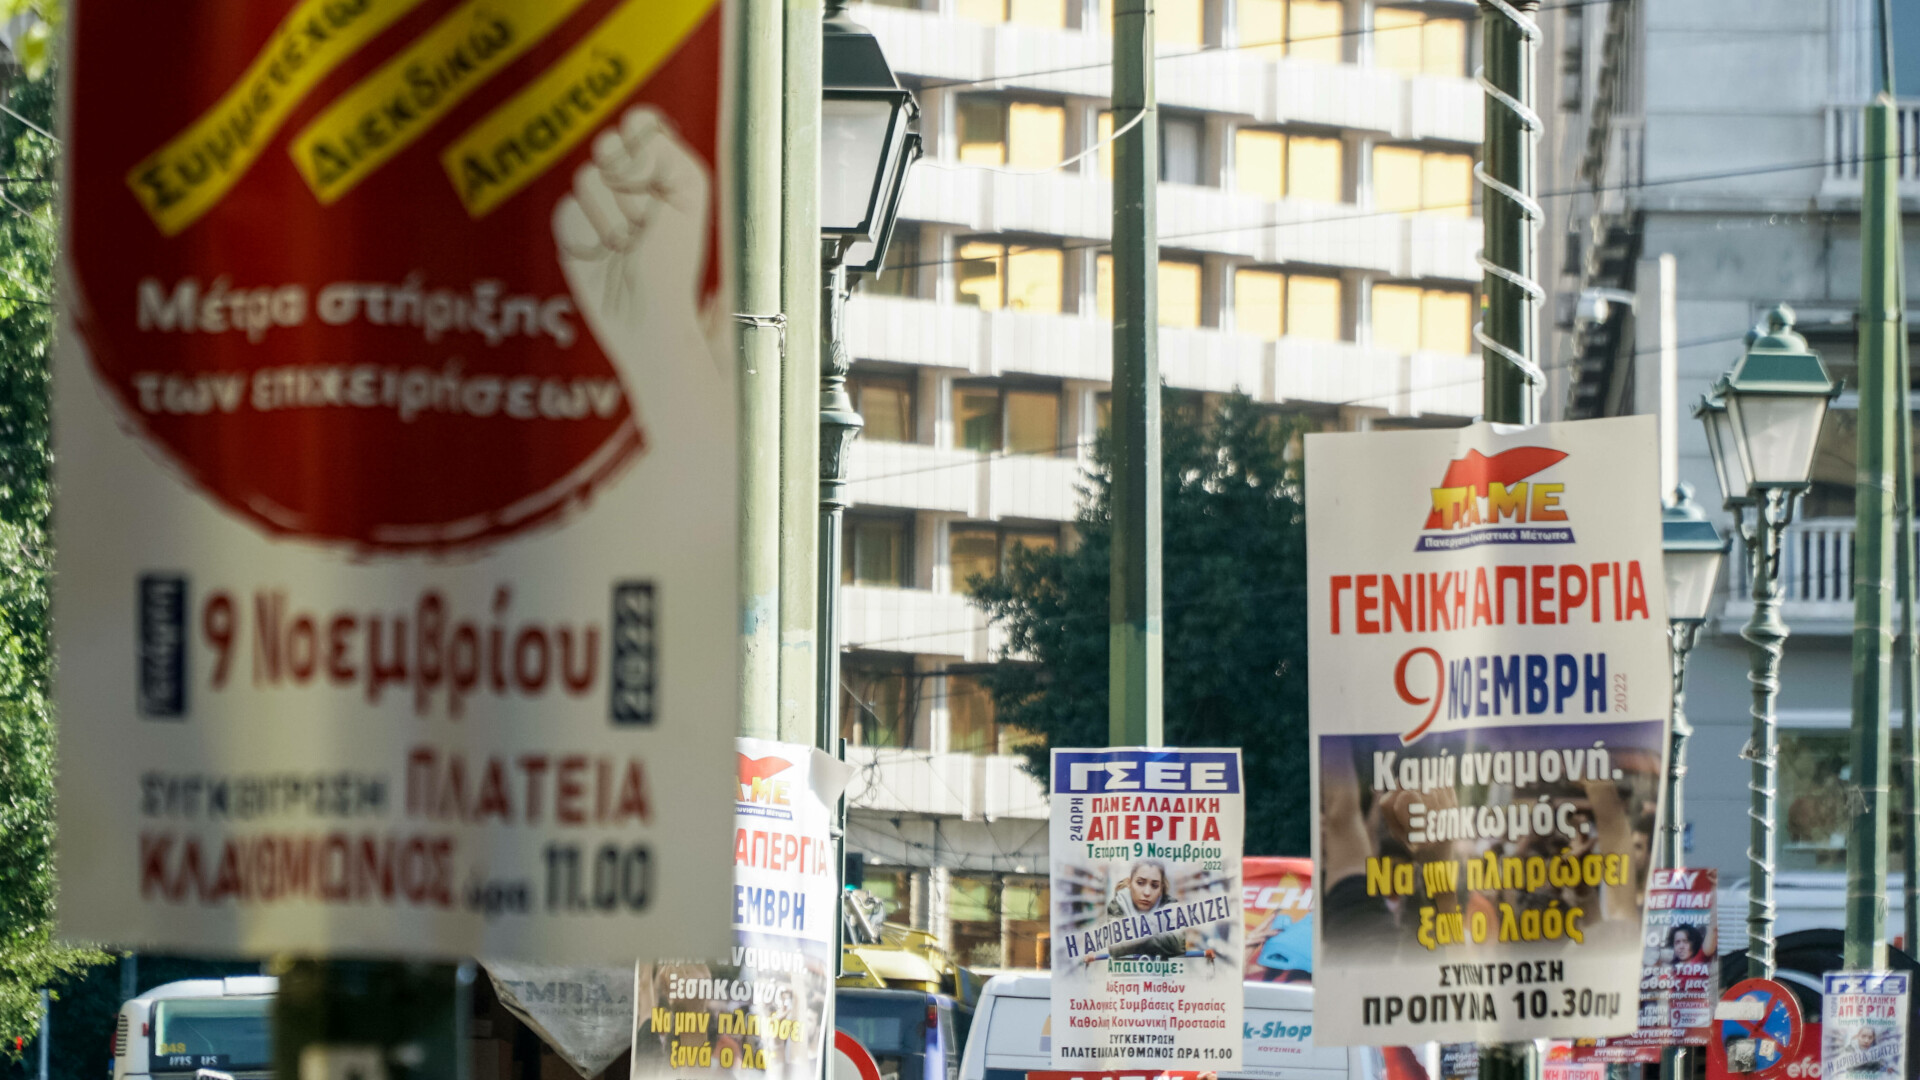 Grecia este paralizată din cauza grevei generale. Oamenii au ieșit în stradă împotriva creșterii prețurilor